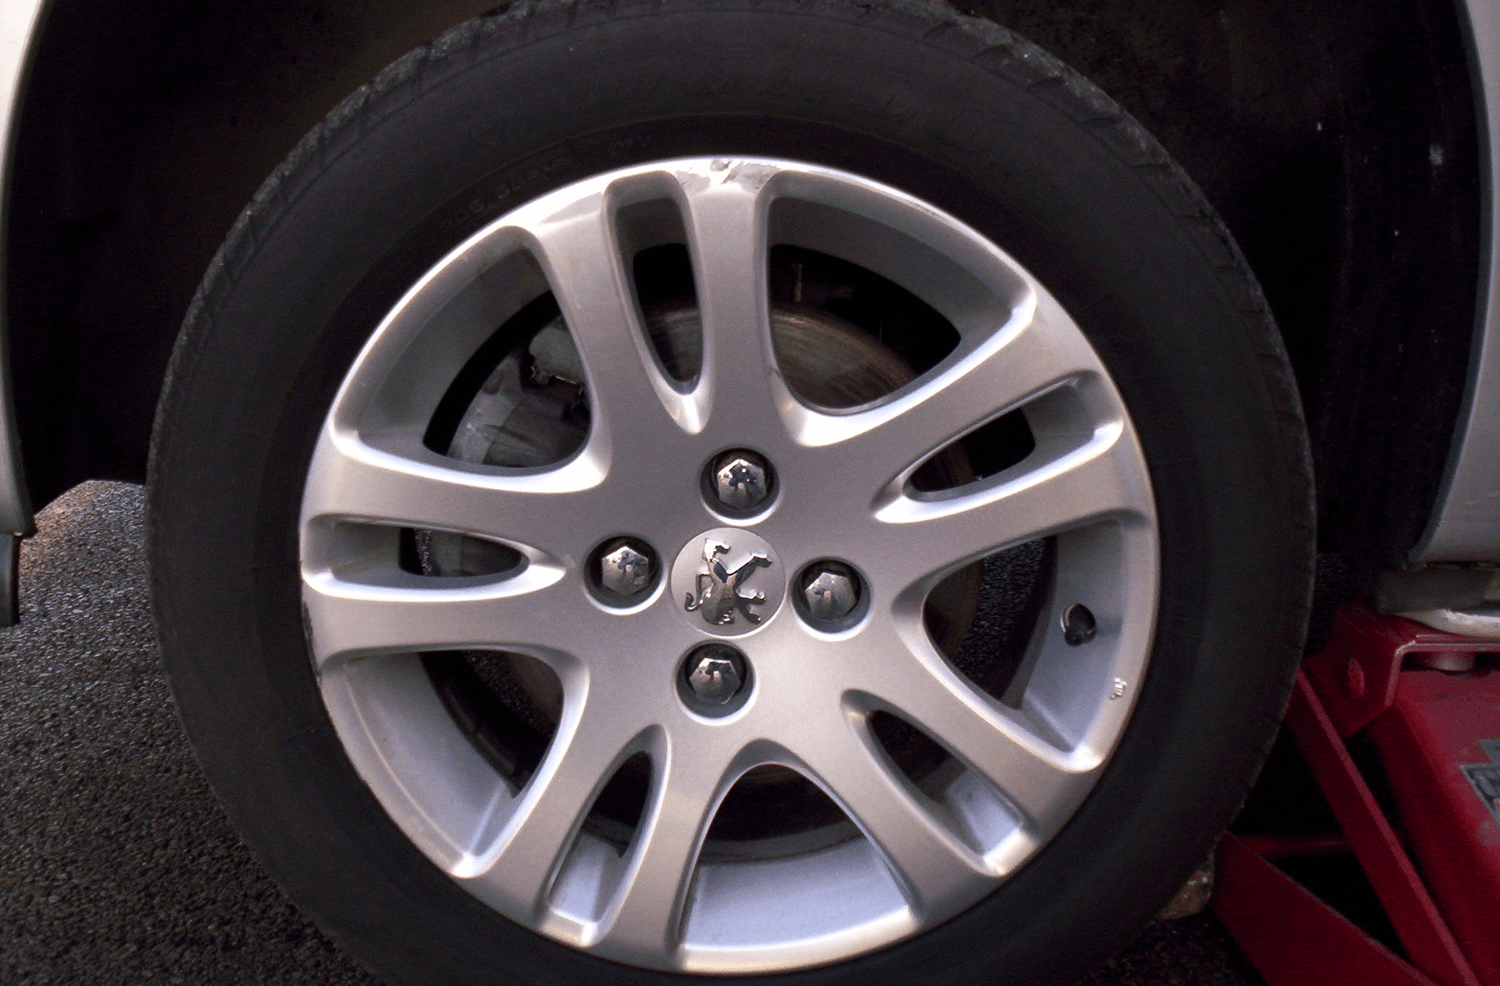 Worn alloy wheel